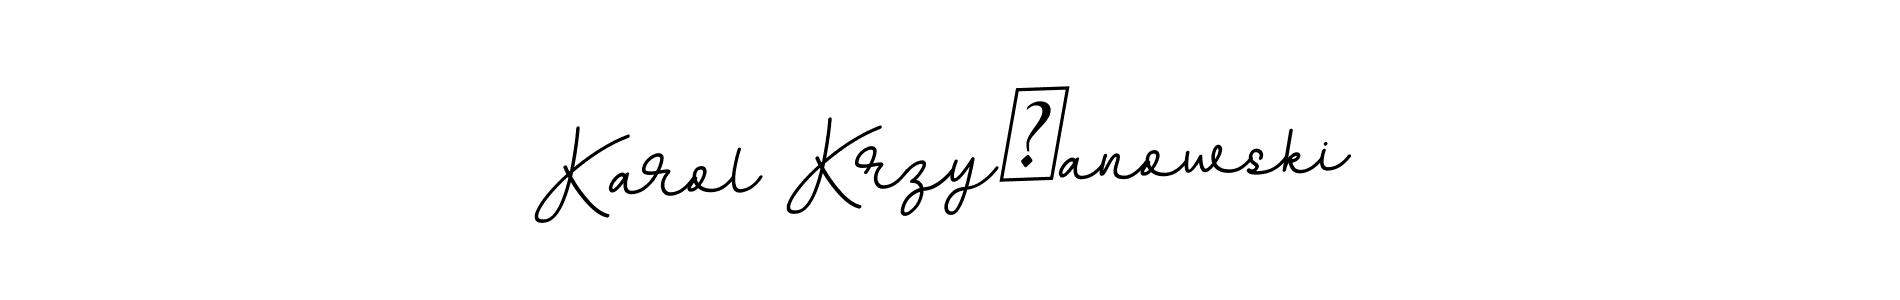 How to Draw Karol Krzyżanowski signature style? BallpointsItalic-DORy9 is a latest design signature styles for name Karol Krzyżanowski. Karol Krzyżanowski signature style 11 images and pictures png